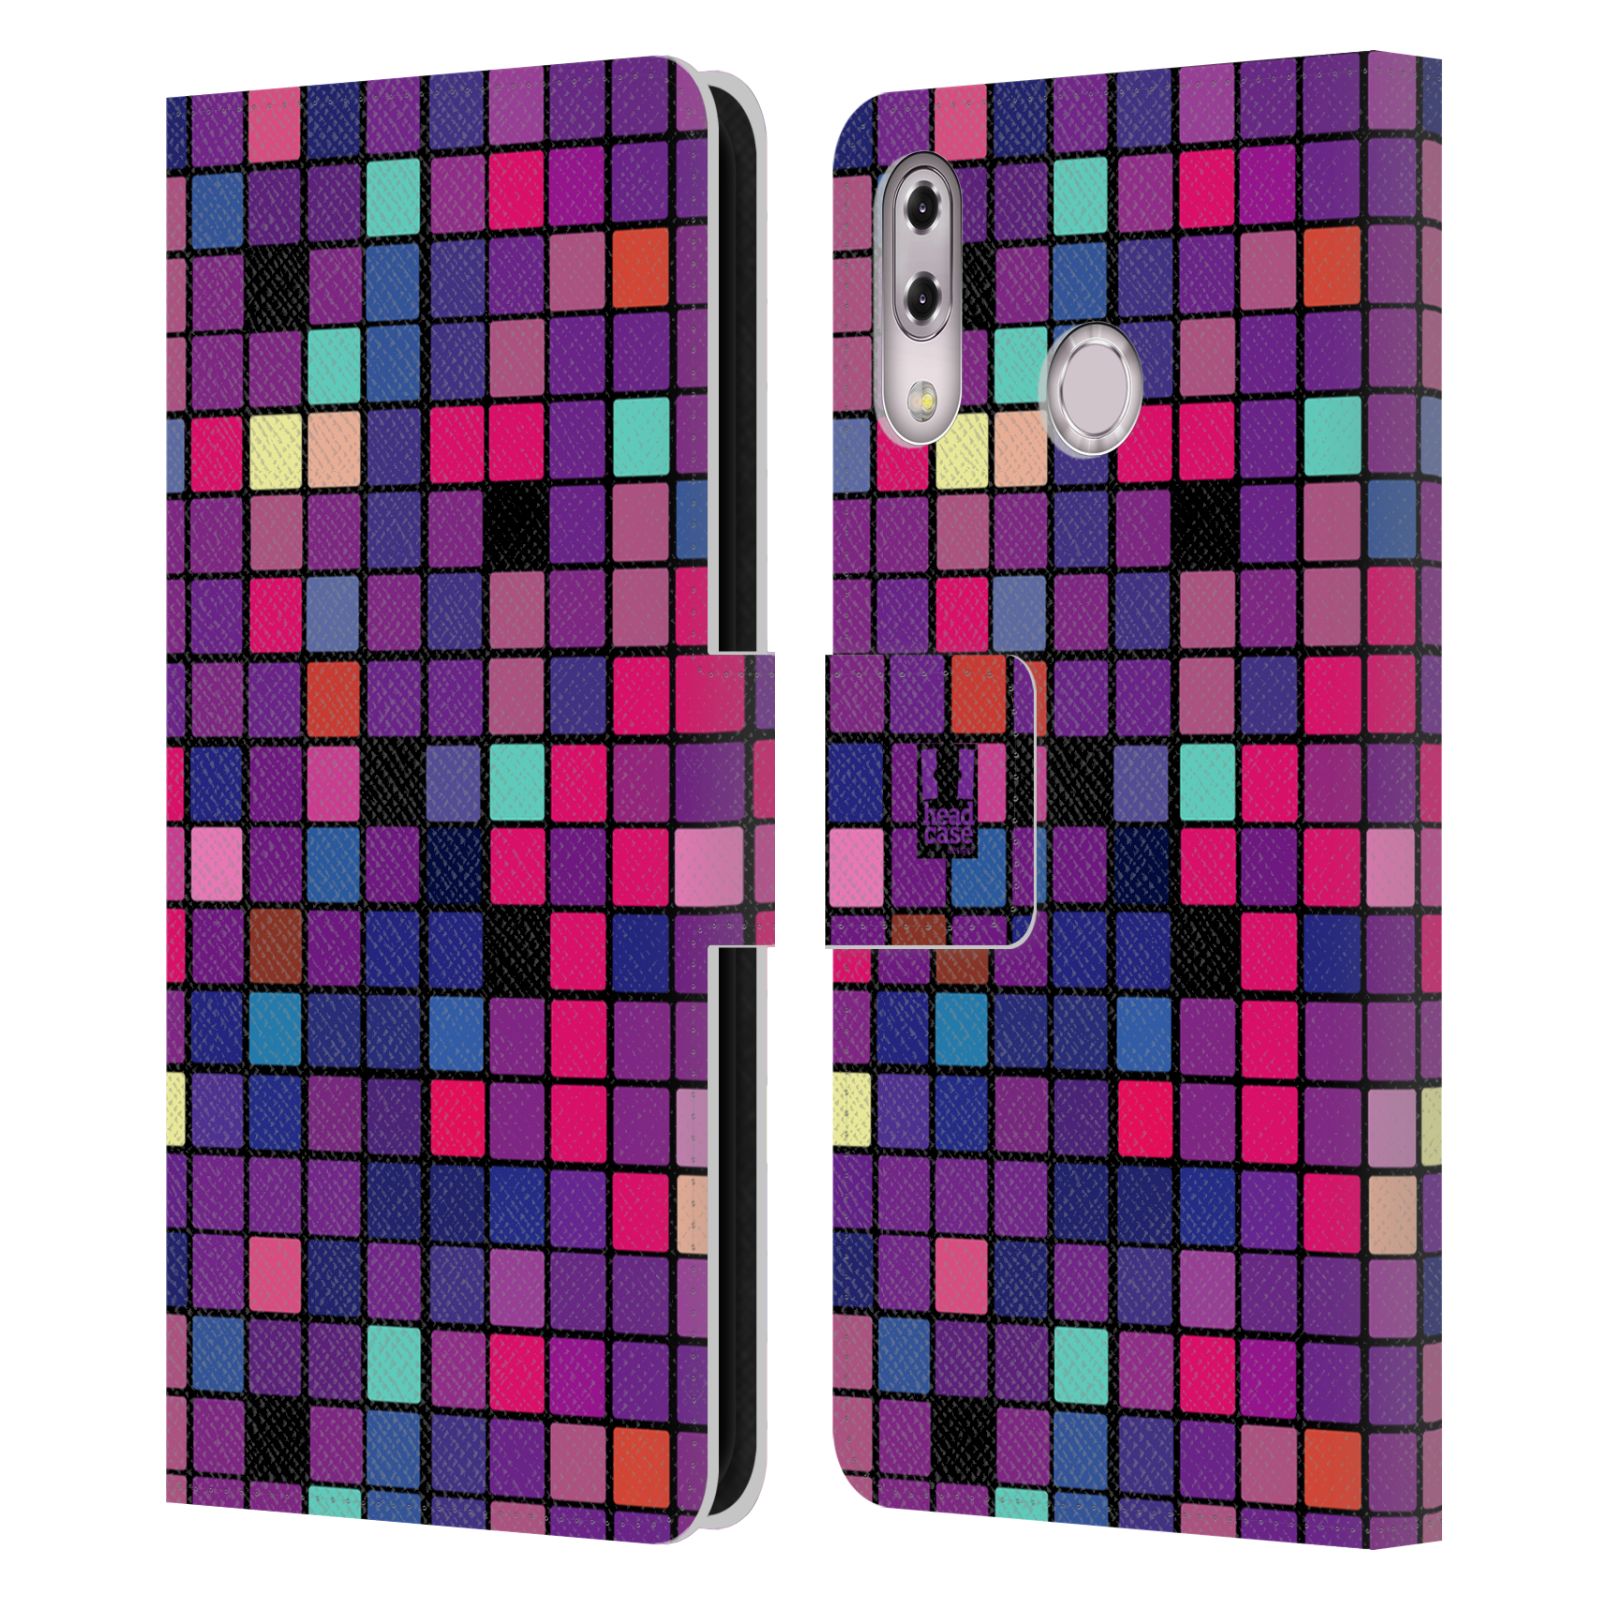 Pouzdro pro mobil Asus Zenfone 5z ZS620KL, 5 ZE620KL  - Disko style fialová